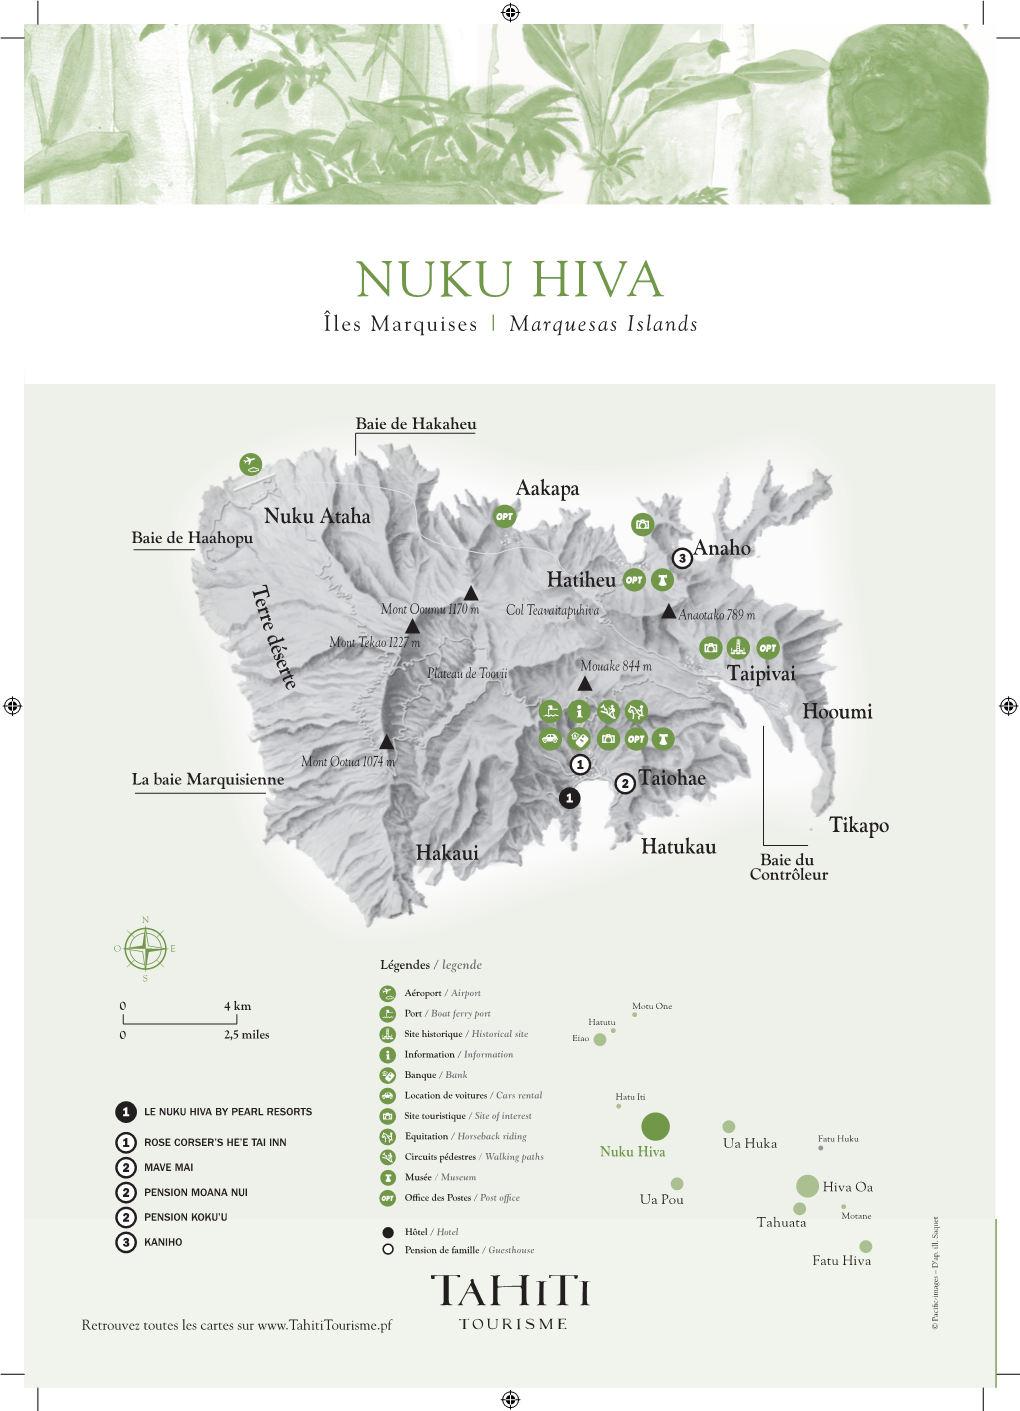 Nuku Hiva Îles Marquises | Marquesas Islands